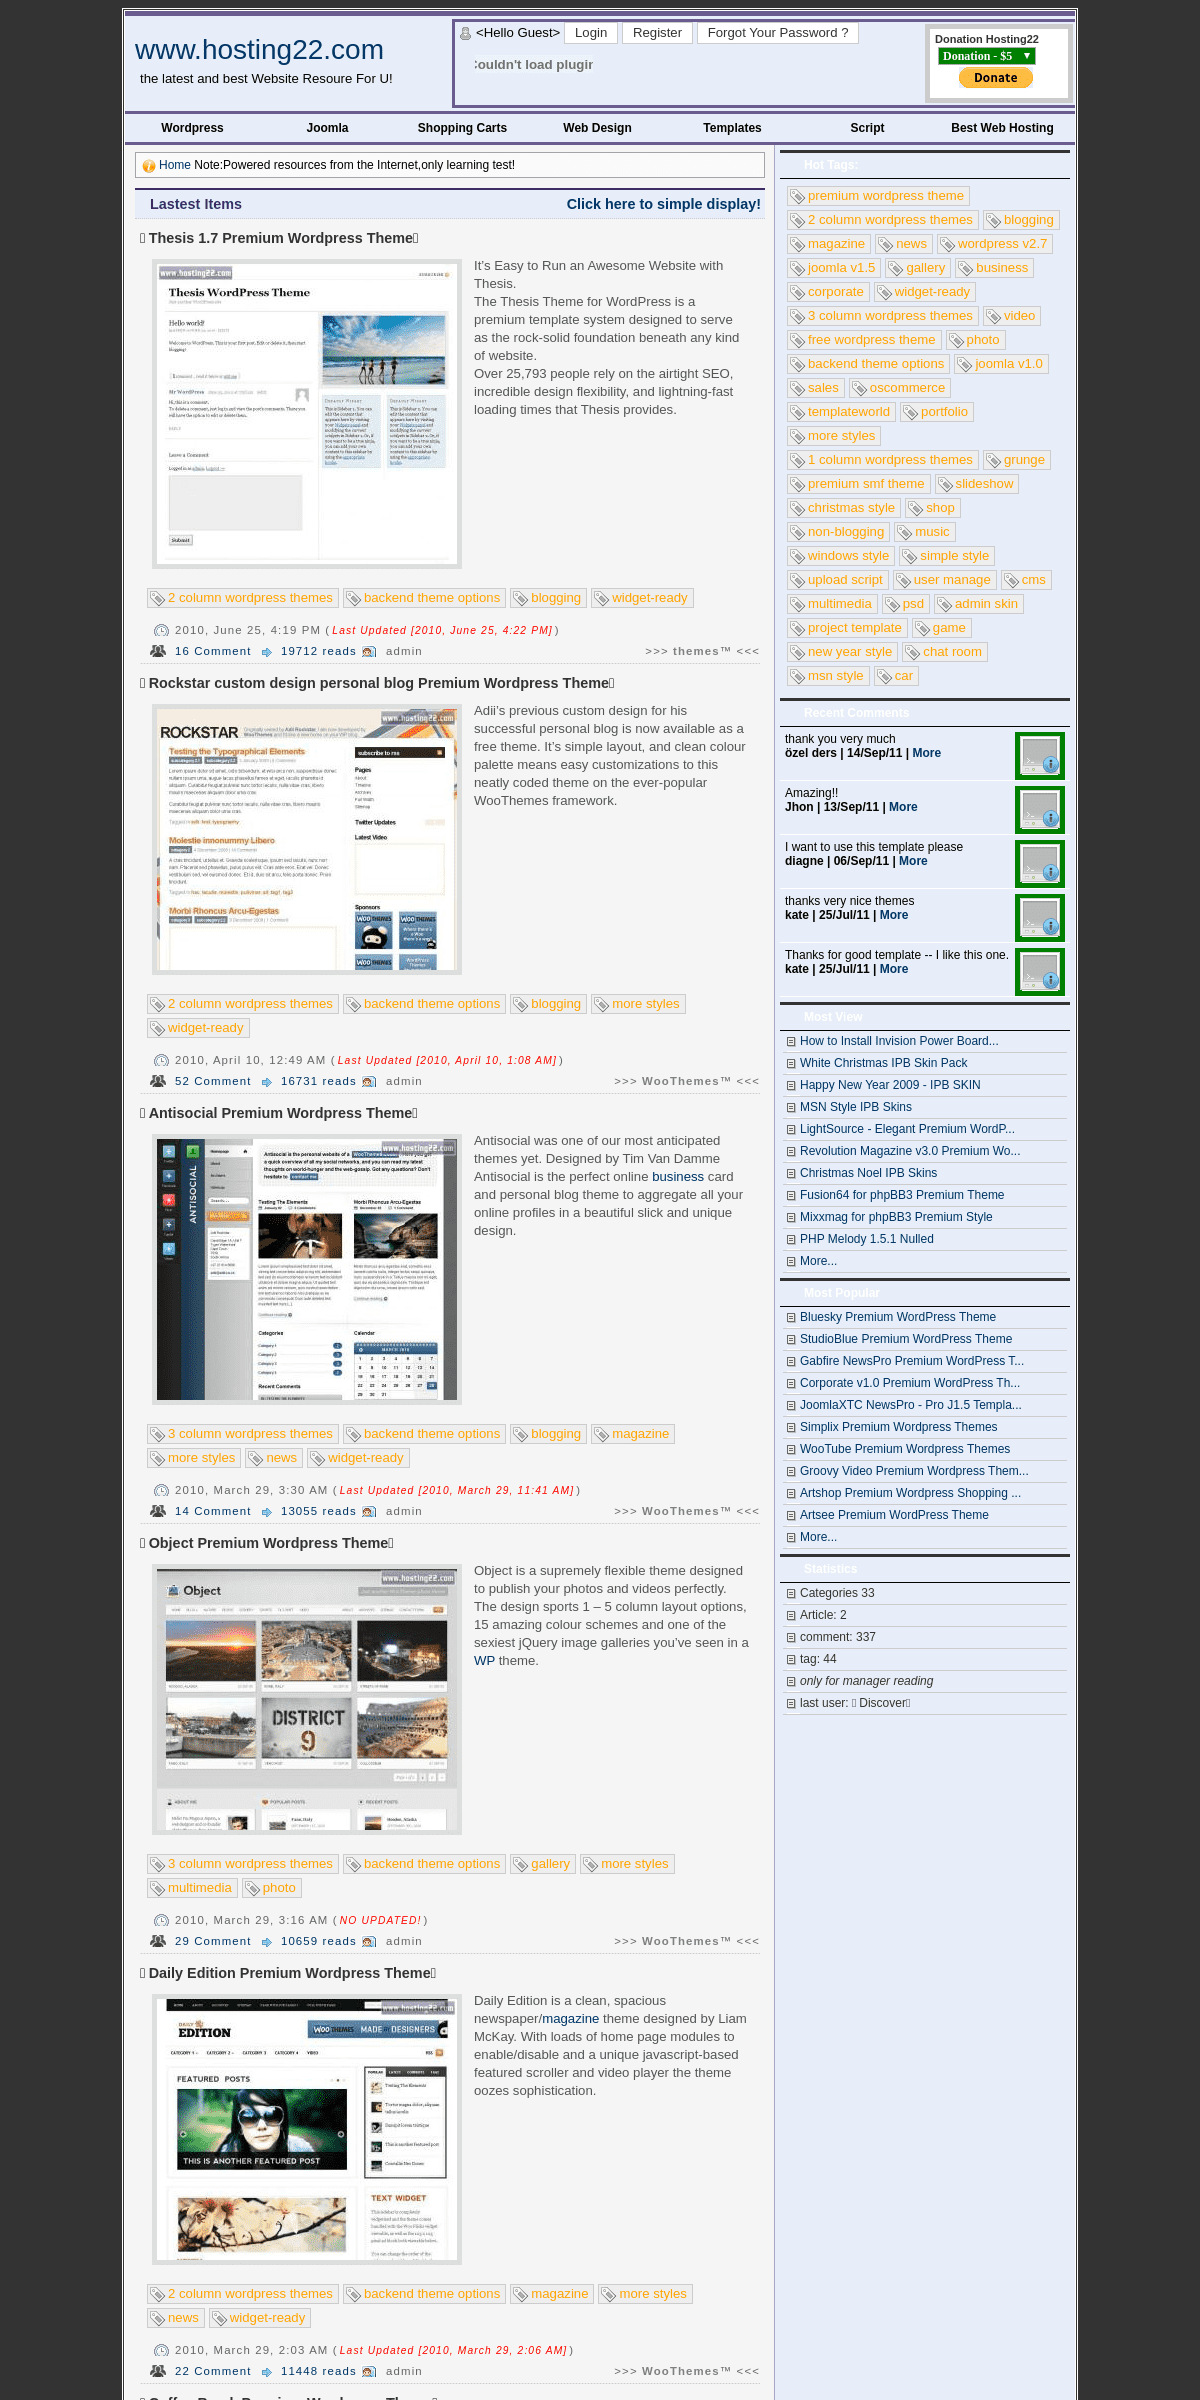 A complete backup of hosting22.com